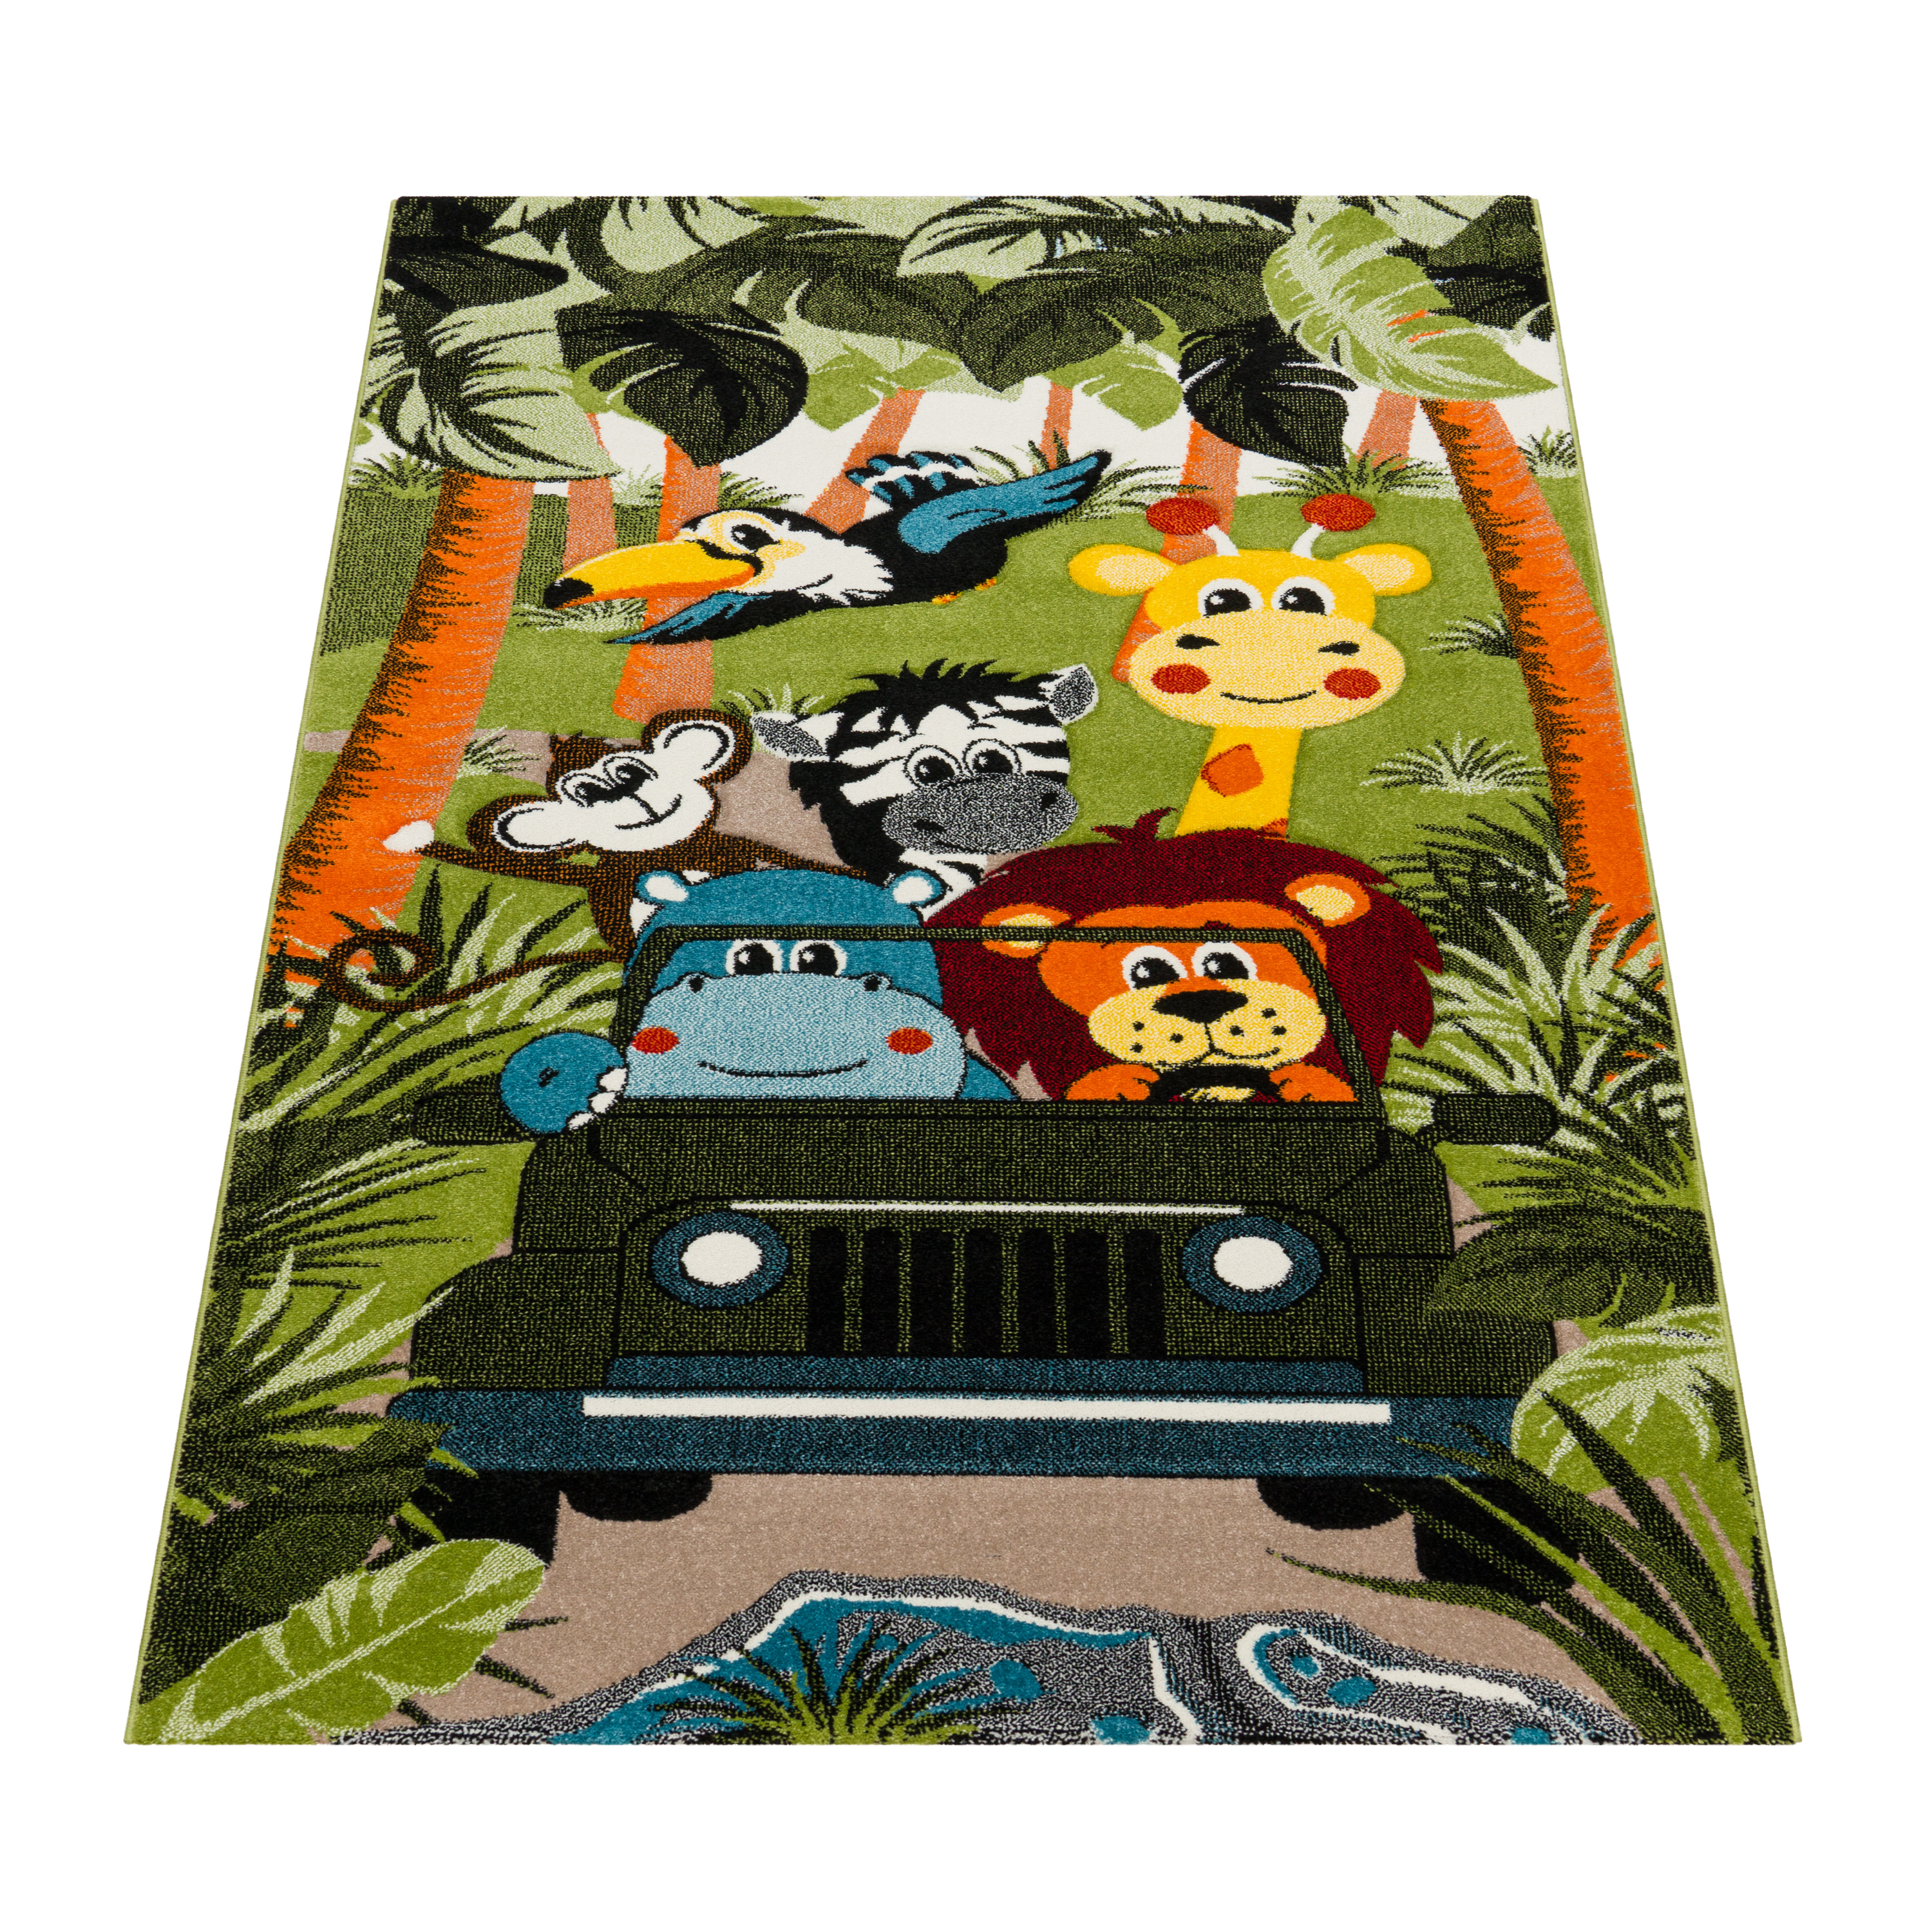 Kinderzimmer Teppich Tier Motiv Dschungel Modern Grün Kind